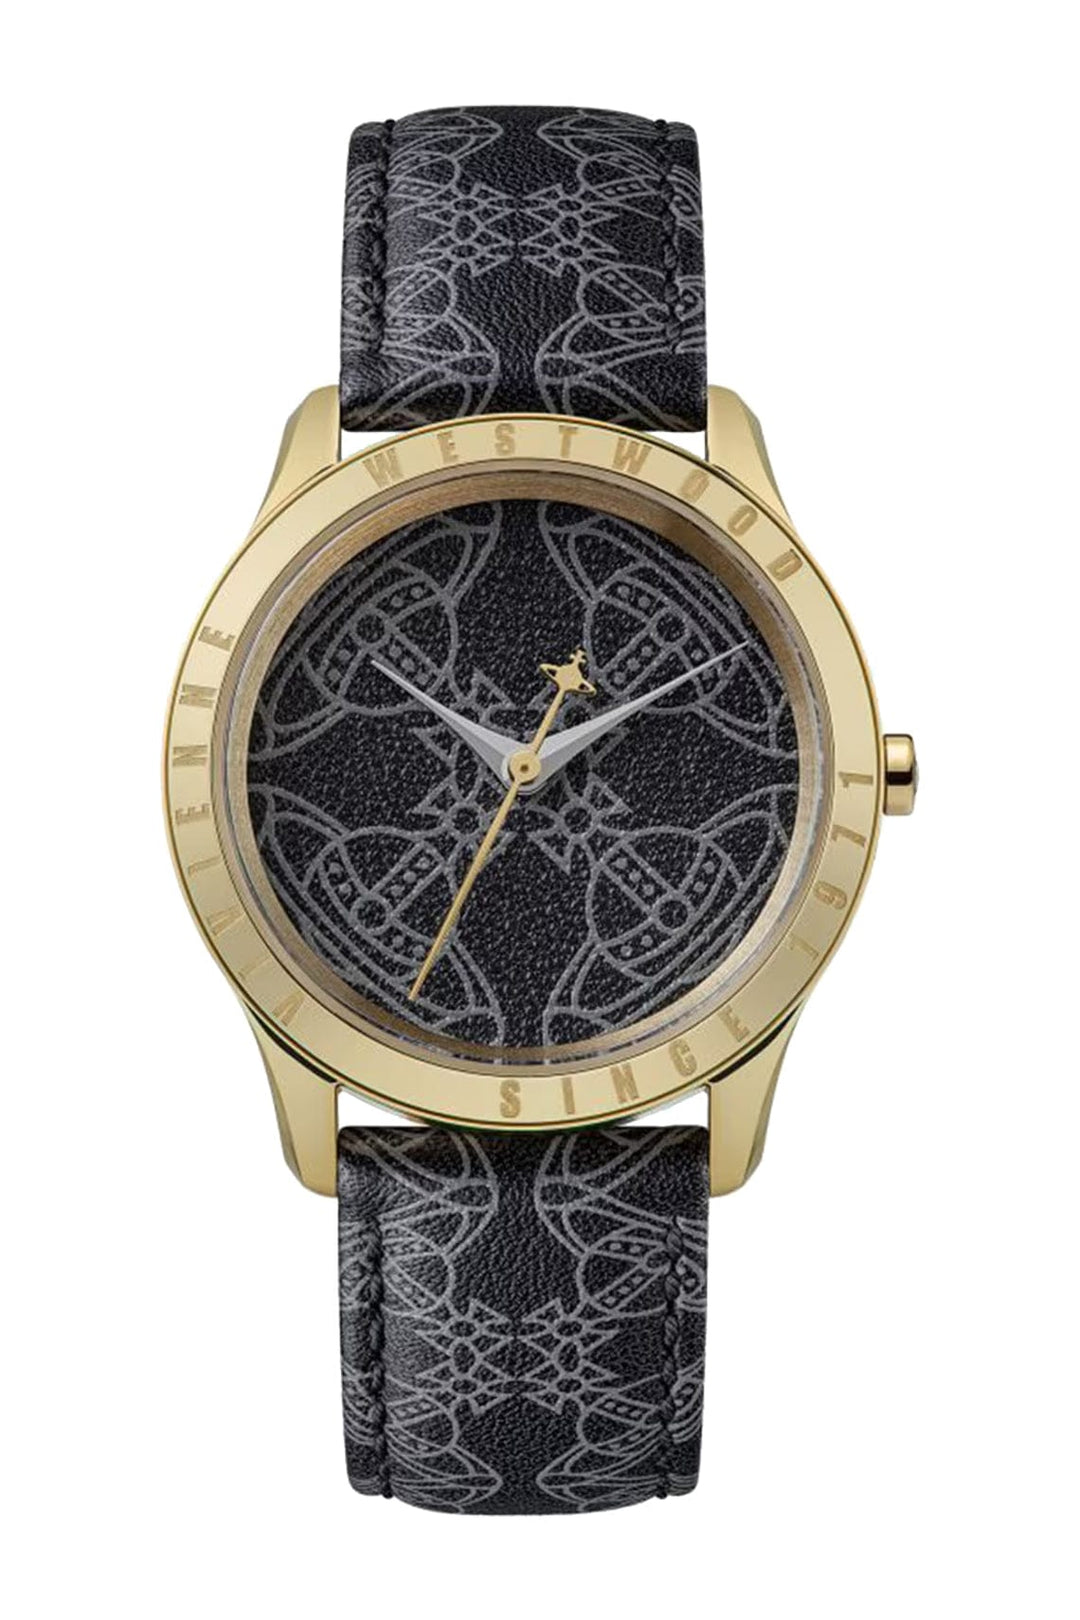 Vivienne Westwood Quartz Watches Vivienne Westwood Berkley Black Gold 35mm Black Watch Brand